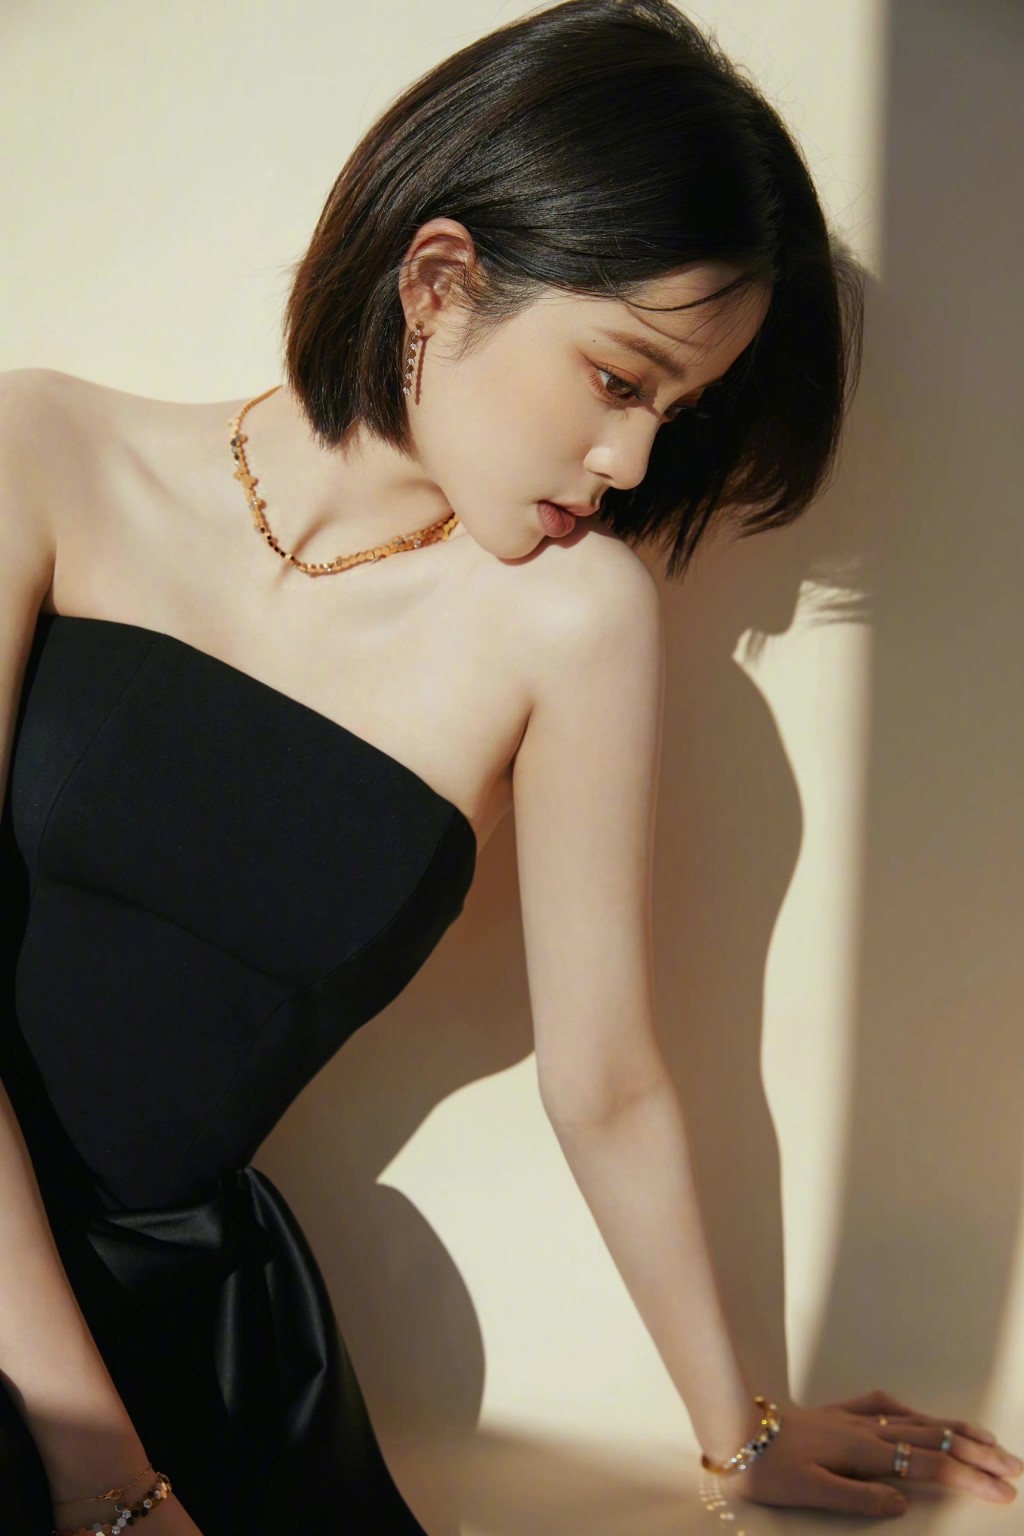 欧阳娜娜俏丽短发造型简约抹胸黑裙优雅时尚写真图片